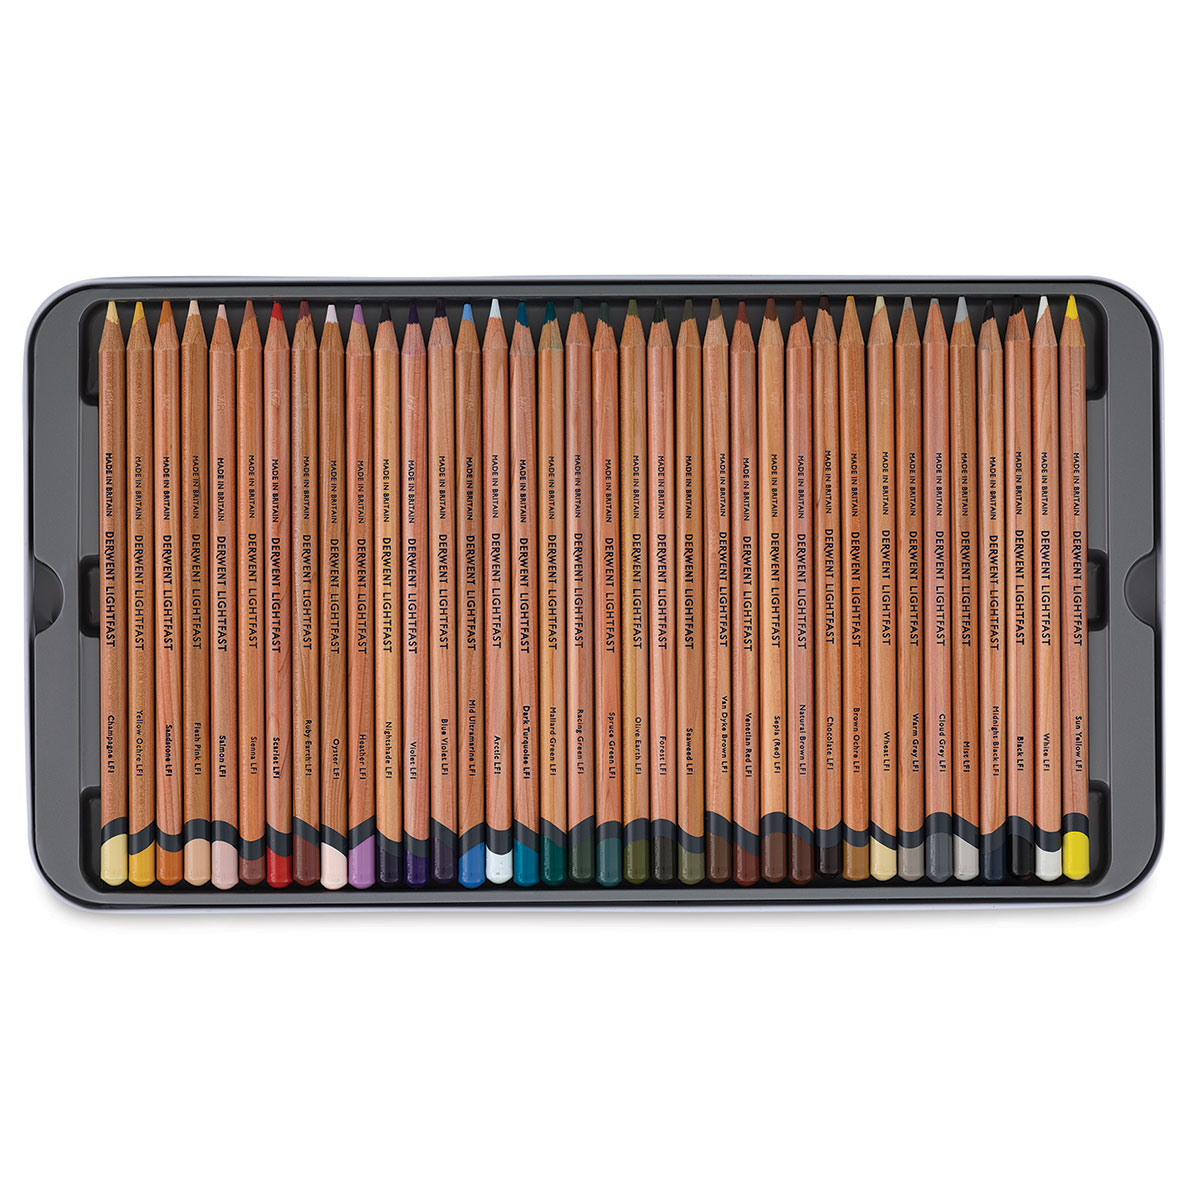 Derwent Lightfast Pencil Set of 36